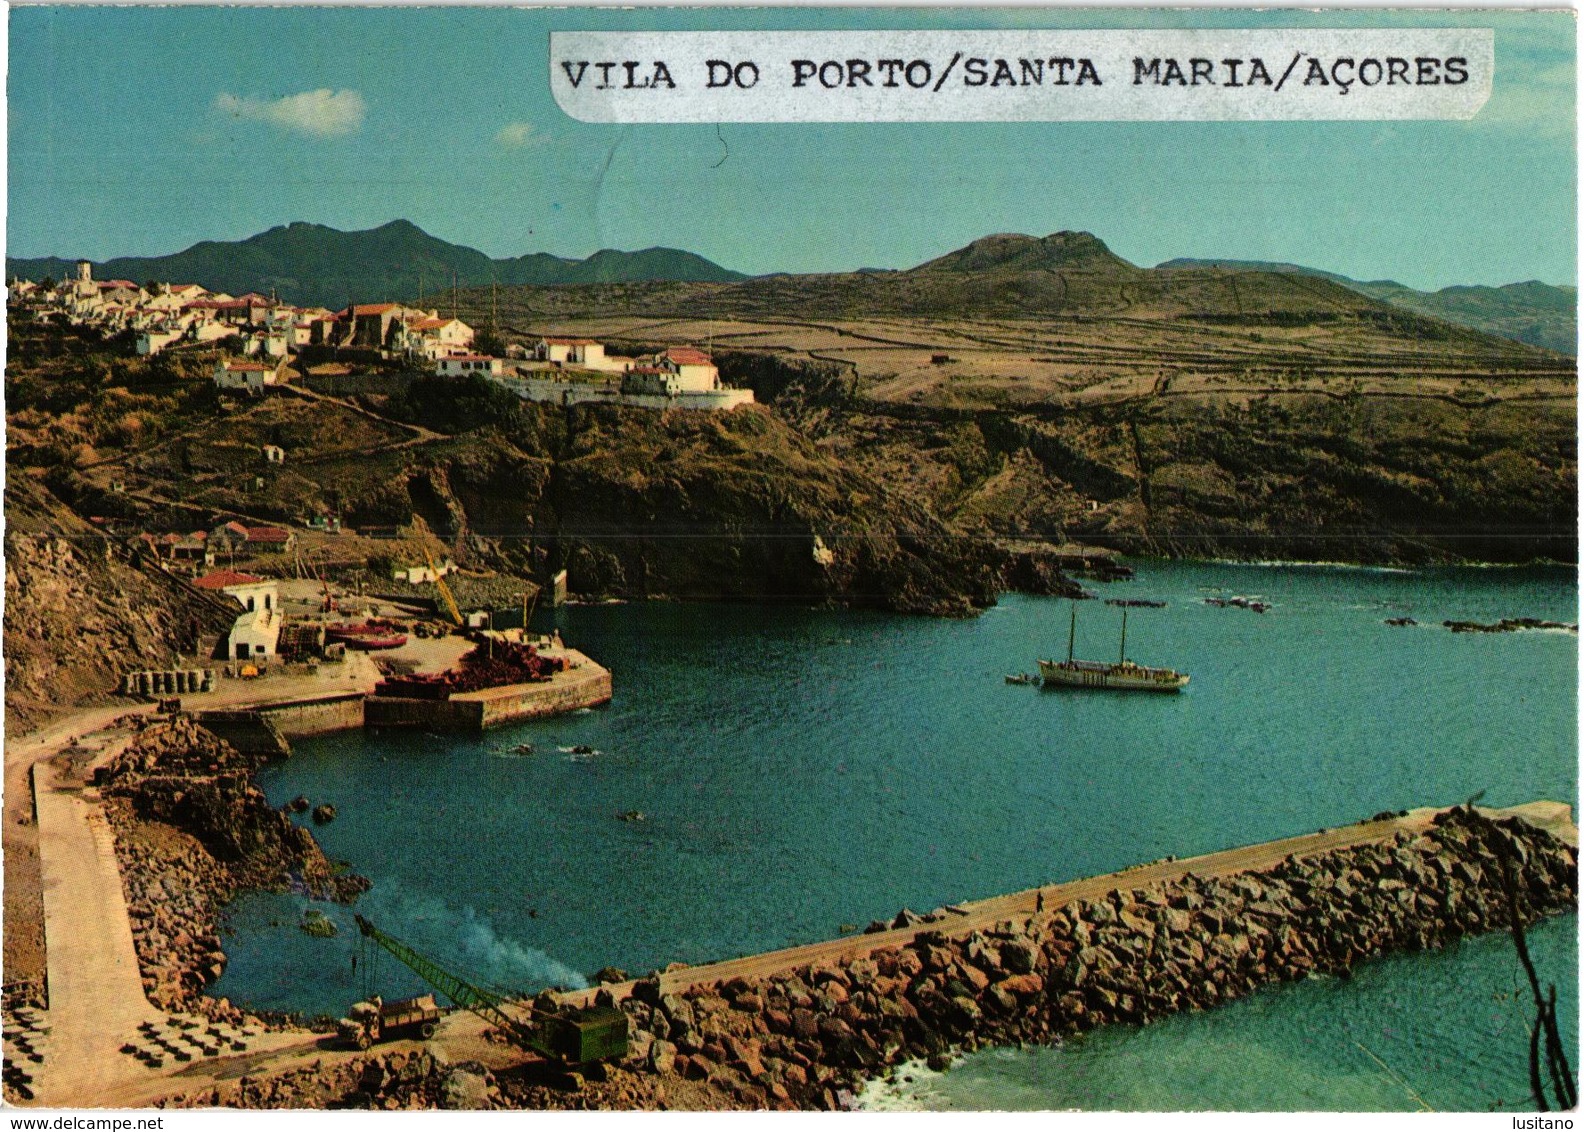 SANTA MARIA AÇORES - Vila Do Porto - AZORES PORTUGAL 1960S - Açores